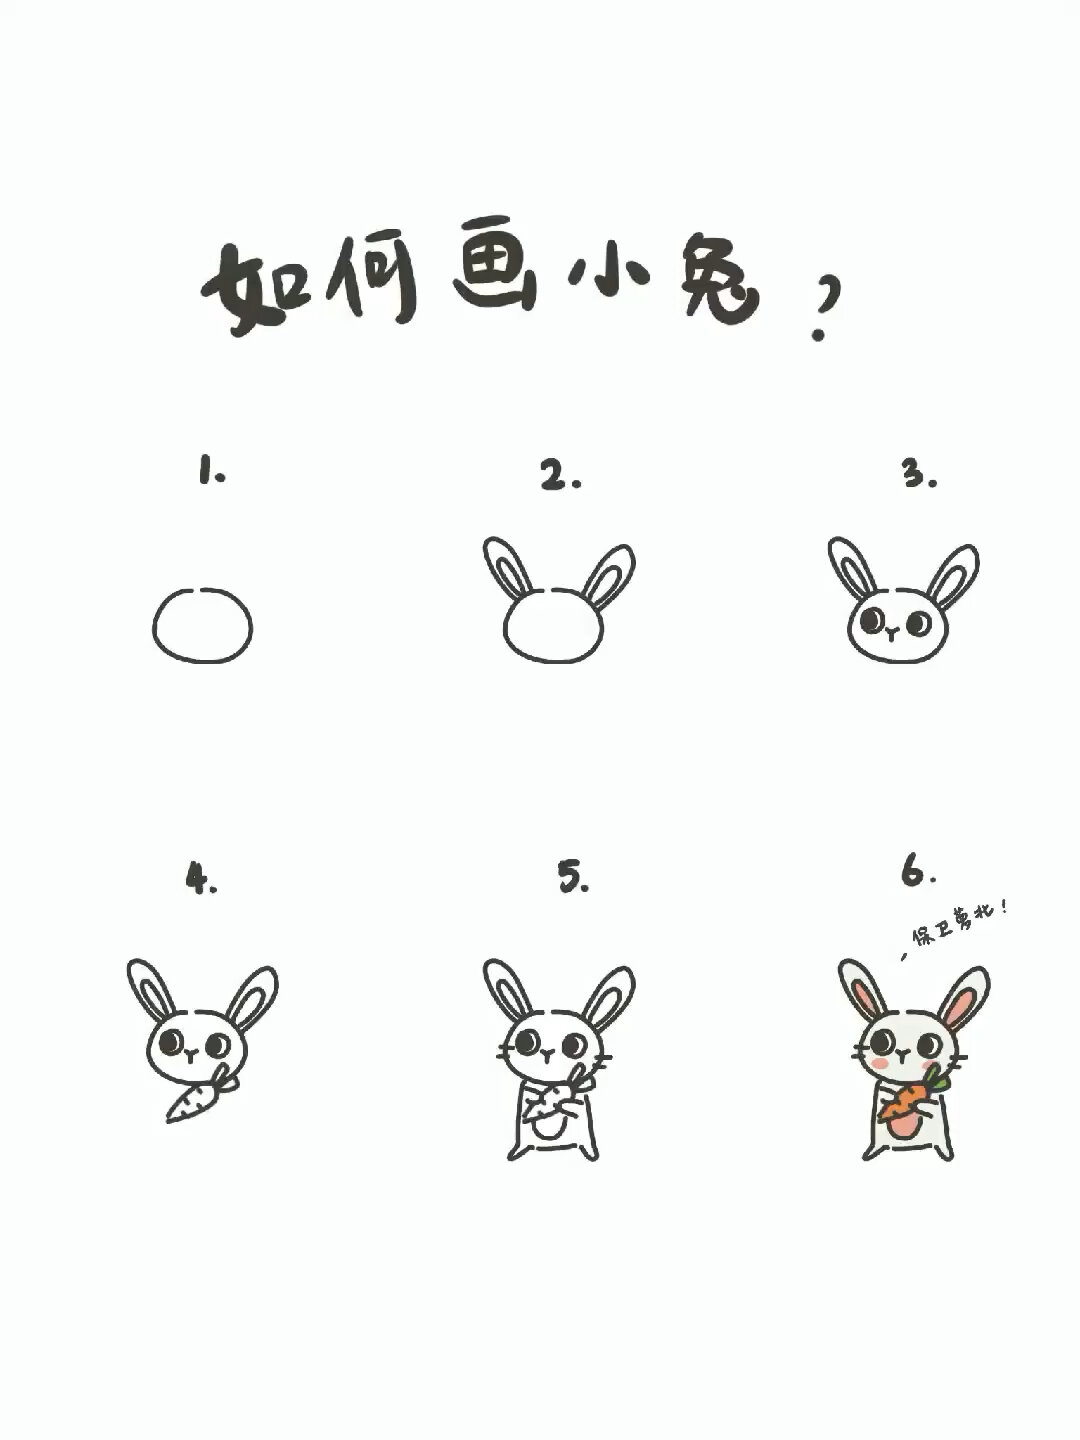 画一只最简单的小兔子图片